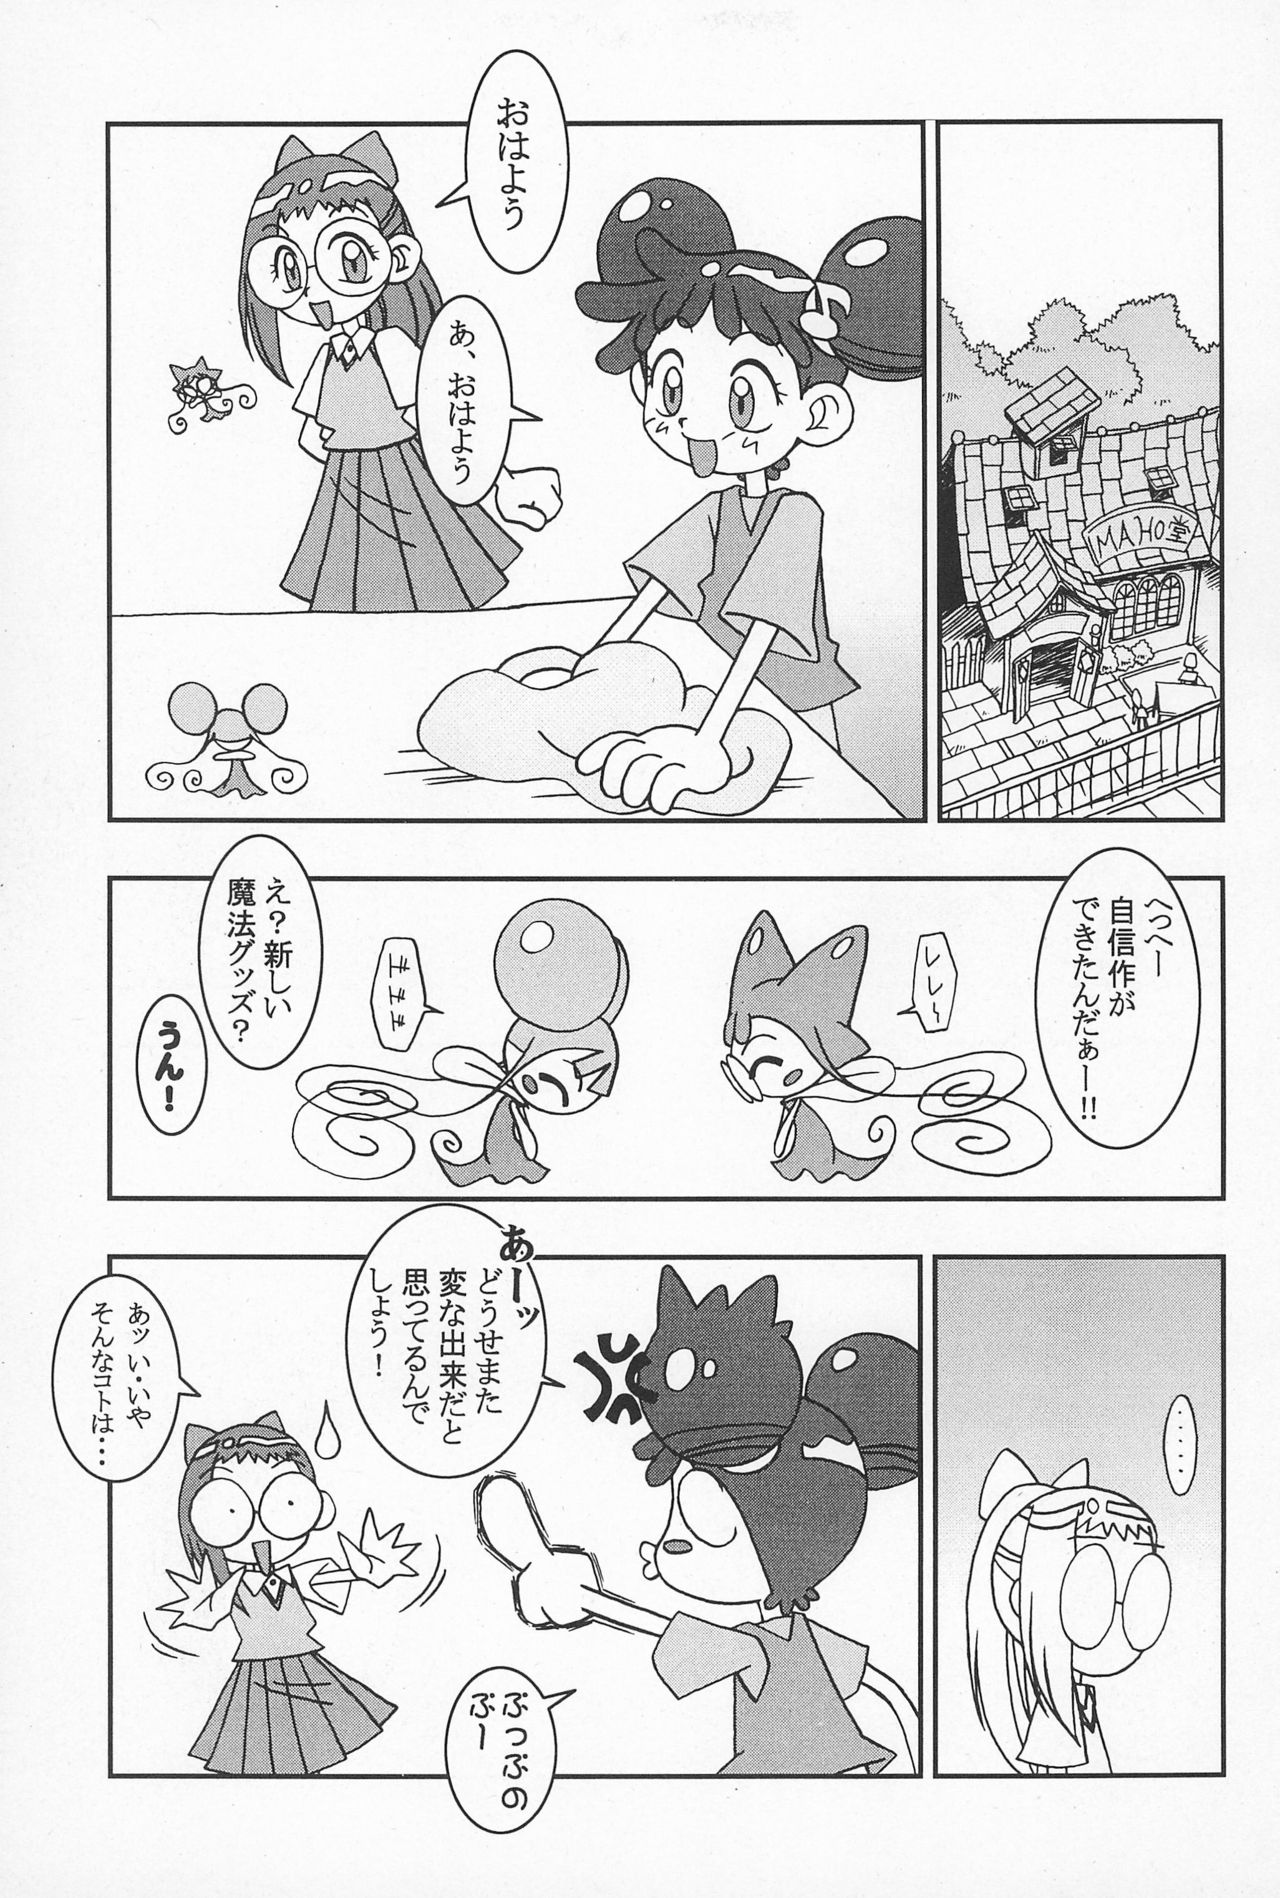 (CR25) [Nekketsu Kouenji Housoukyoku, KENIX (Katori Youichi, Ninnin!)] Doremi Fa So La Si Do (Ojamajo Doremi) page 5 full